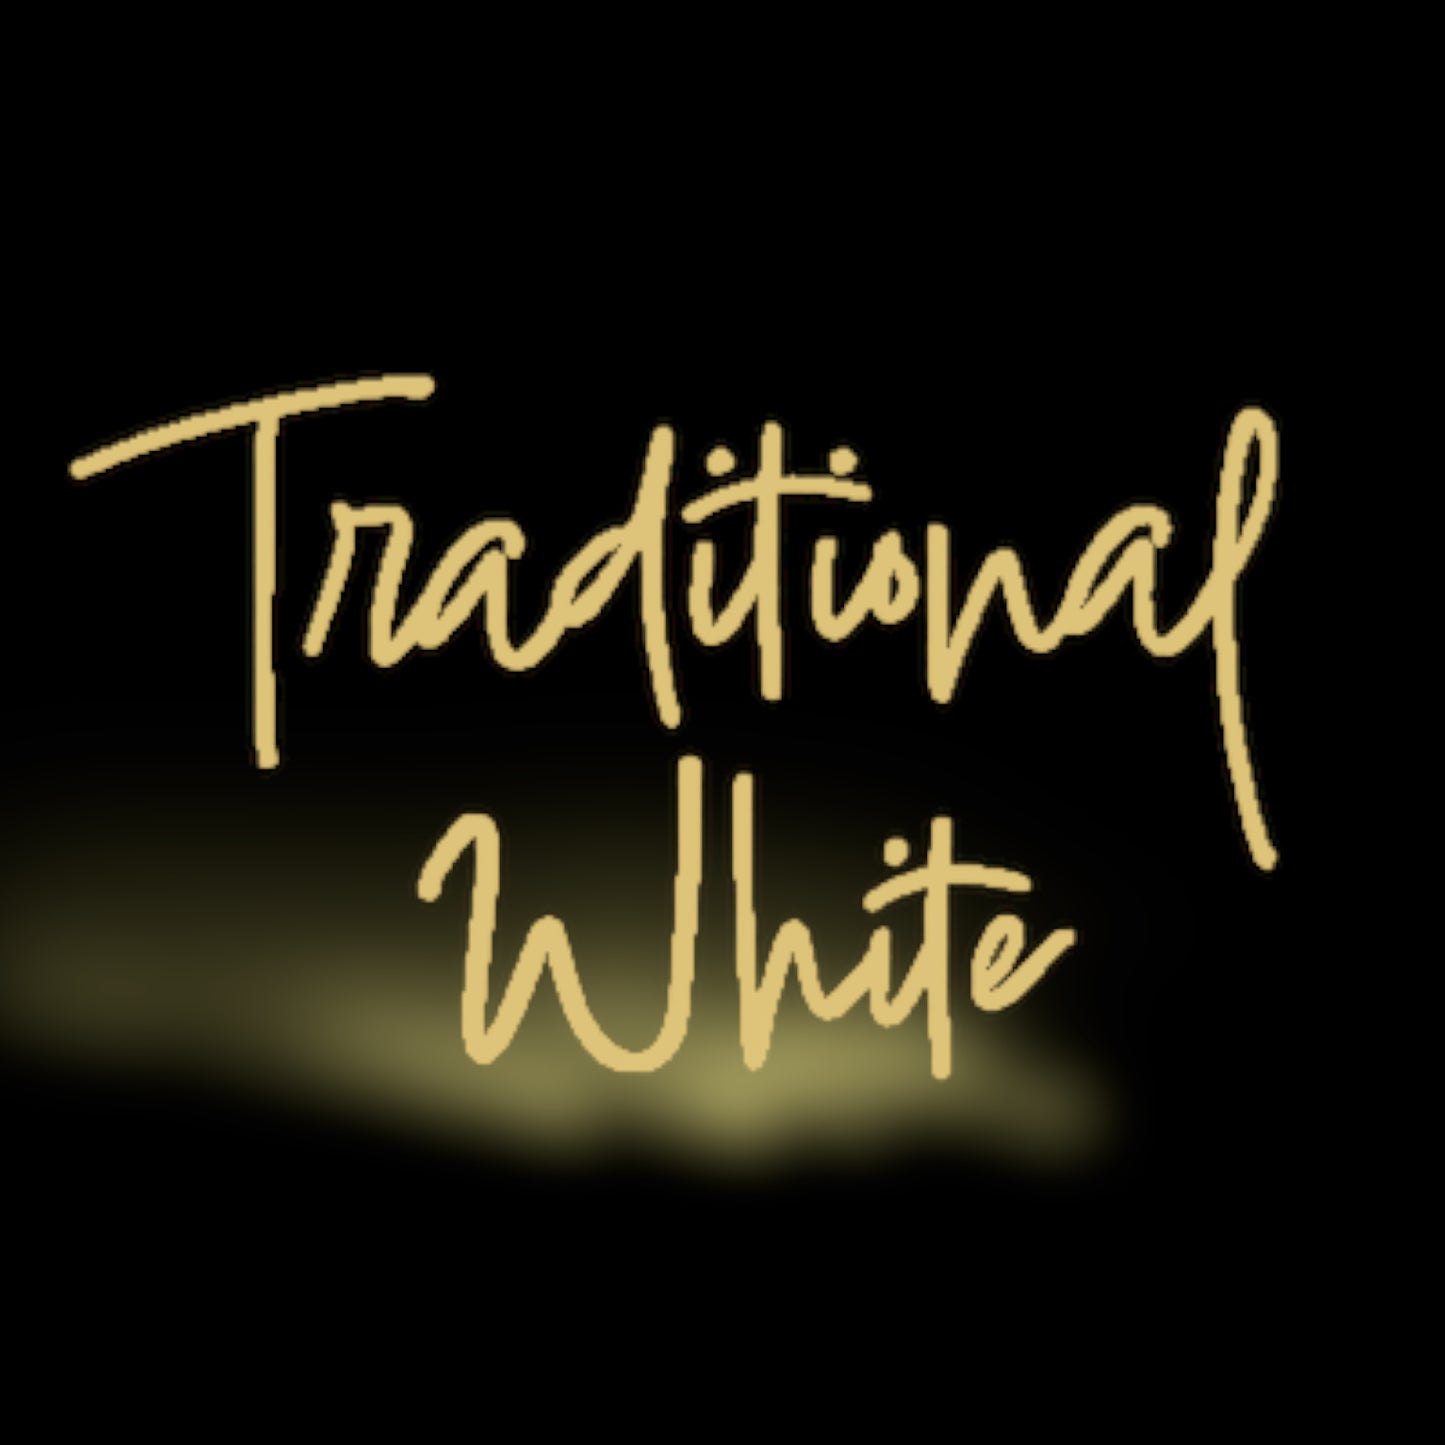 Traditional White Balsamic Vinegar - Barrel-Aged